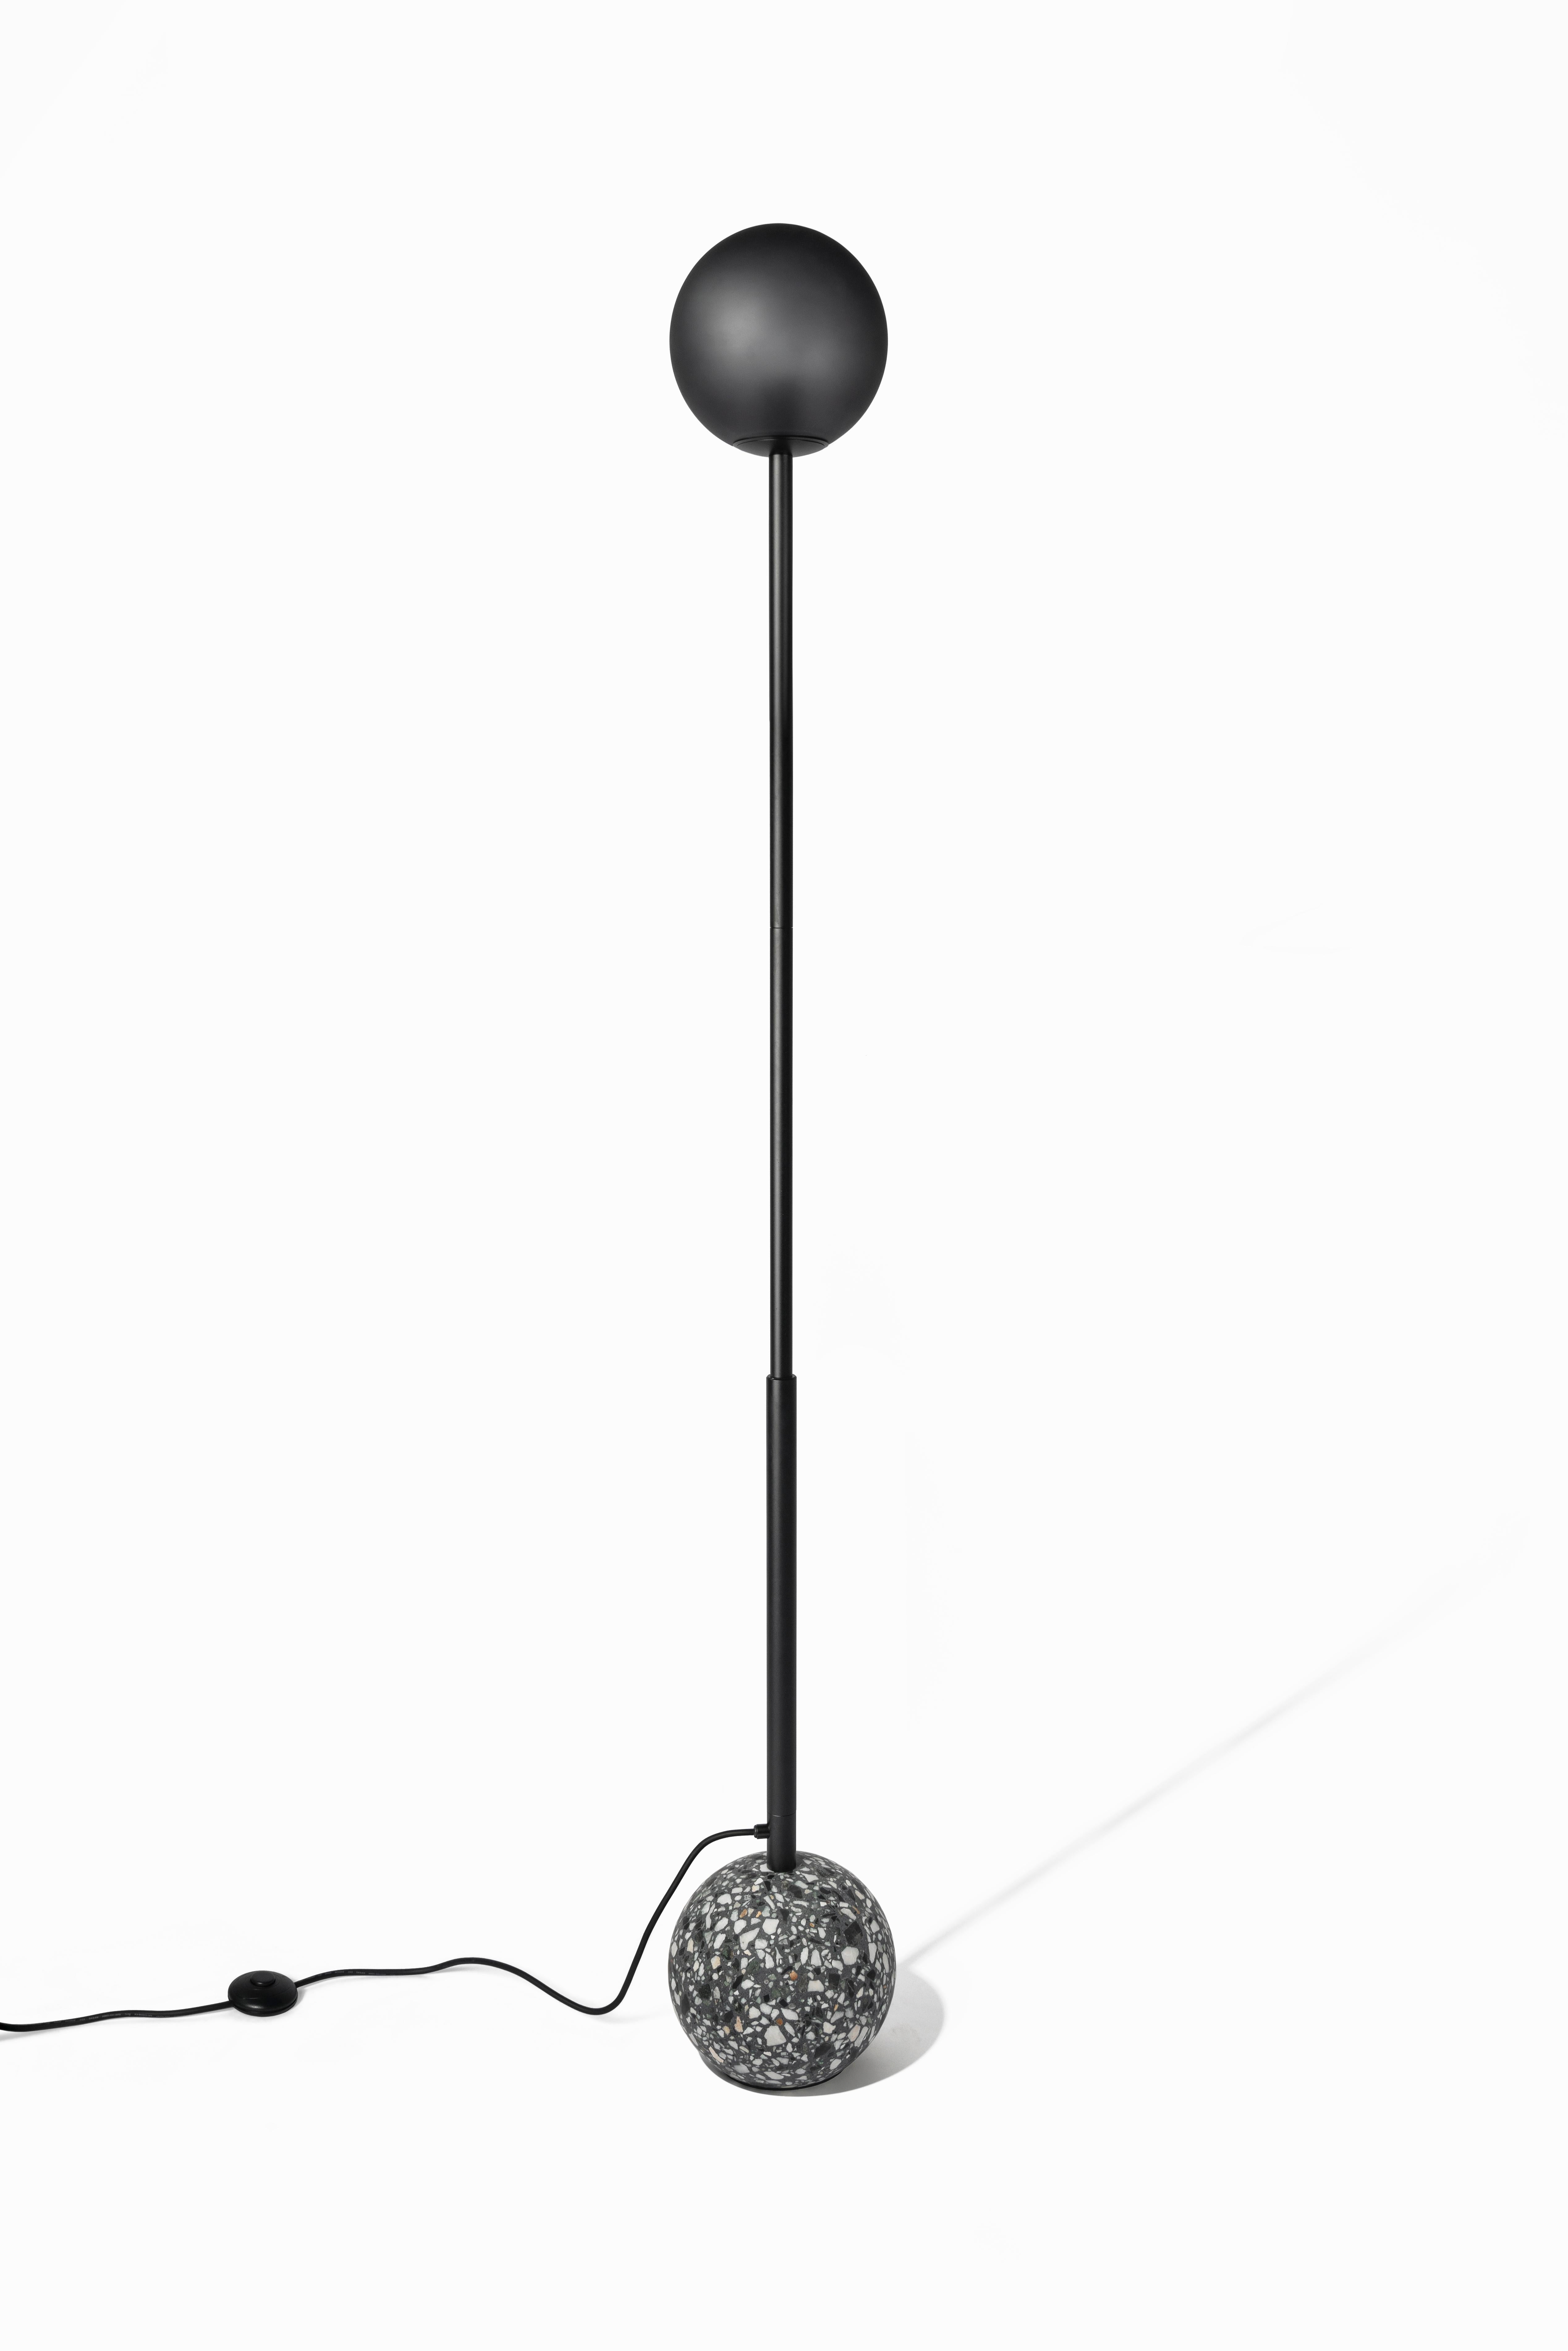 8' Stehleuchte aus schwarzem Terrazzo

Maße: Ø20 cm × H 177 cm

Glühbirne: E27 LED 3W 100-240V 80Ra 200LM 3000K - Kompatibel mit US Stromsystem.

Die Möbel und Leuchten von Bentu Design leiten ihre Einzigartigkeit von der Einfachheit ihrer Formen